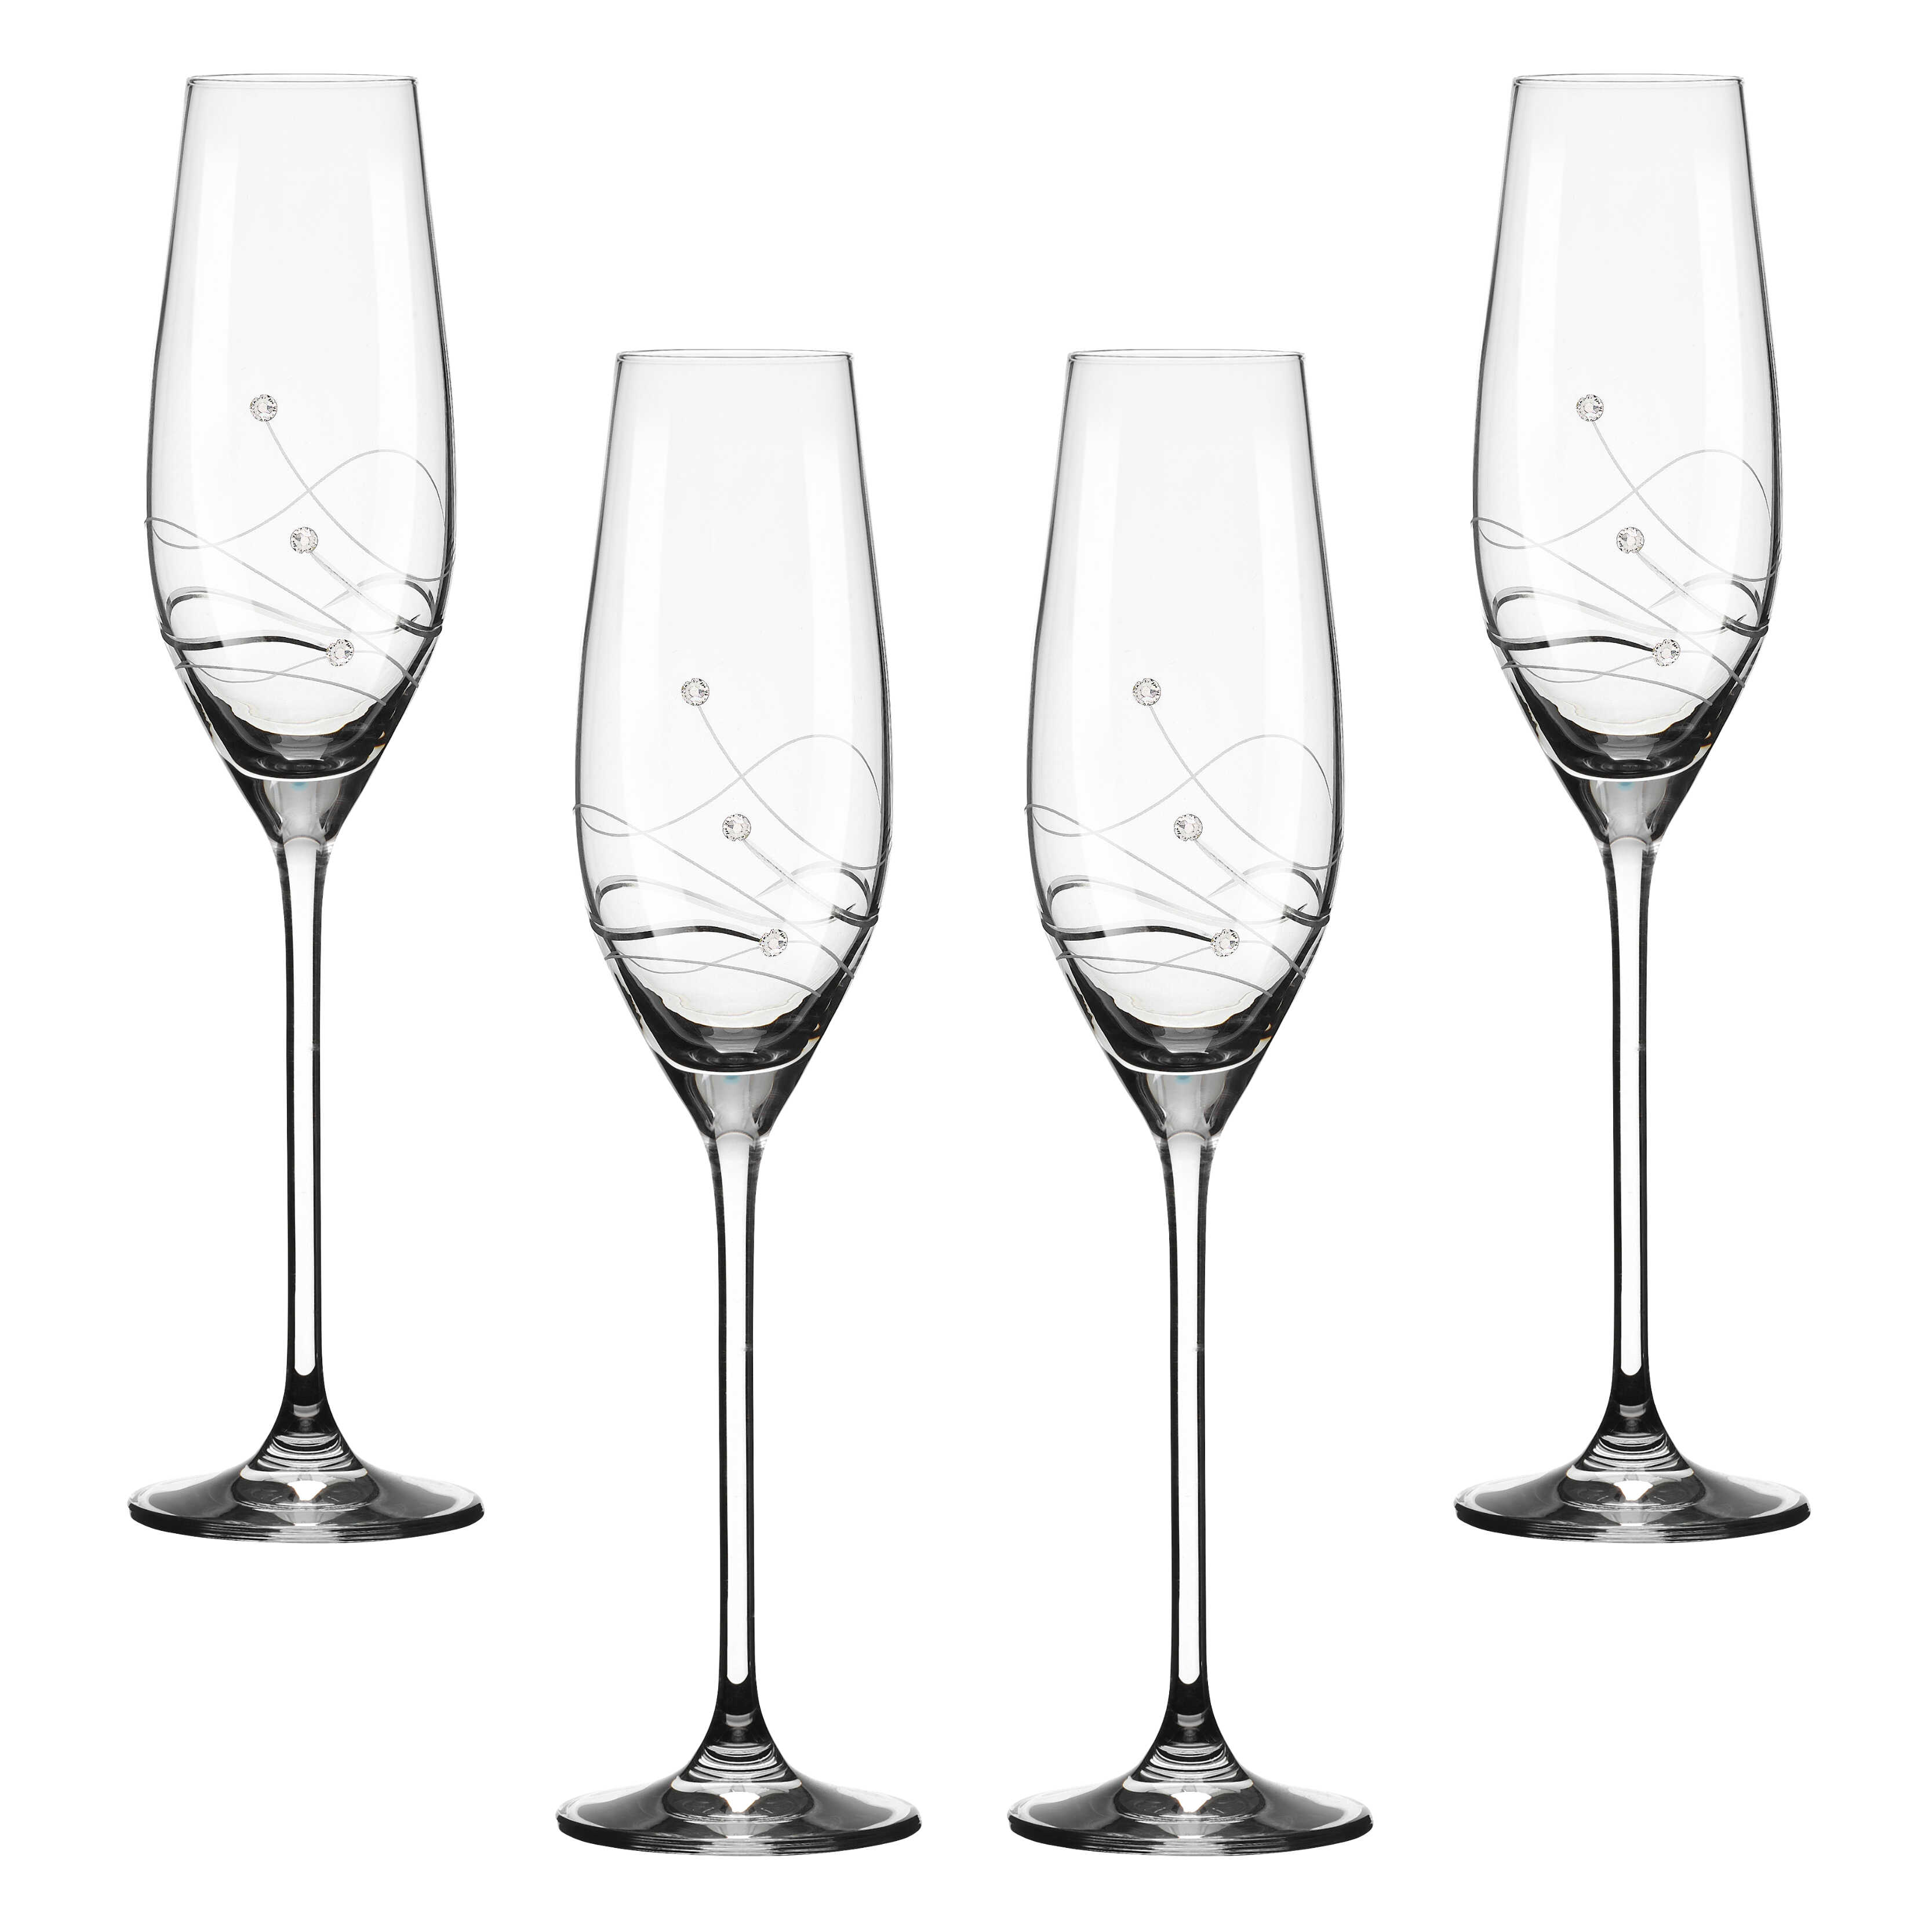 Billede af Clio Champagneglas med Swarovski krystaller - 4 stk.